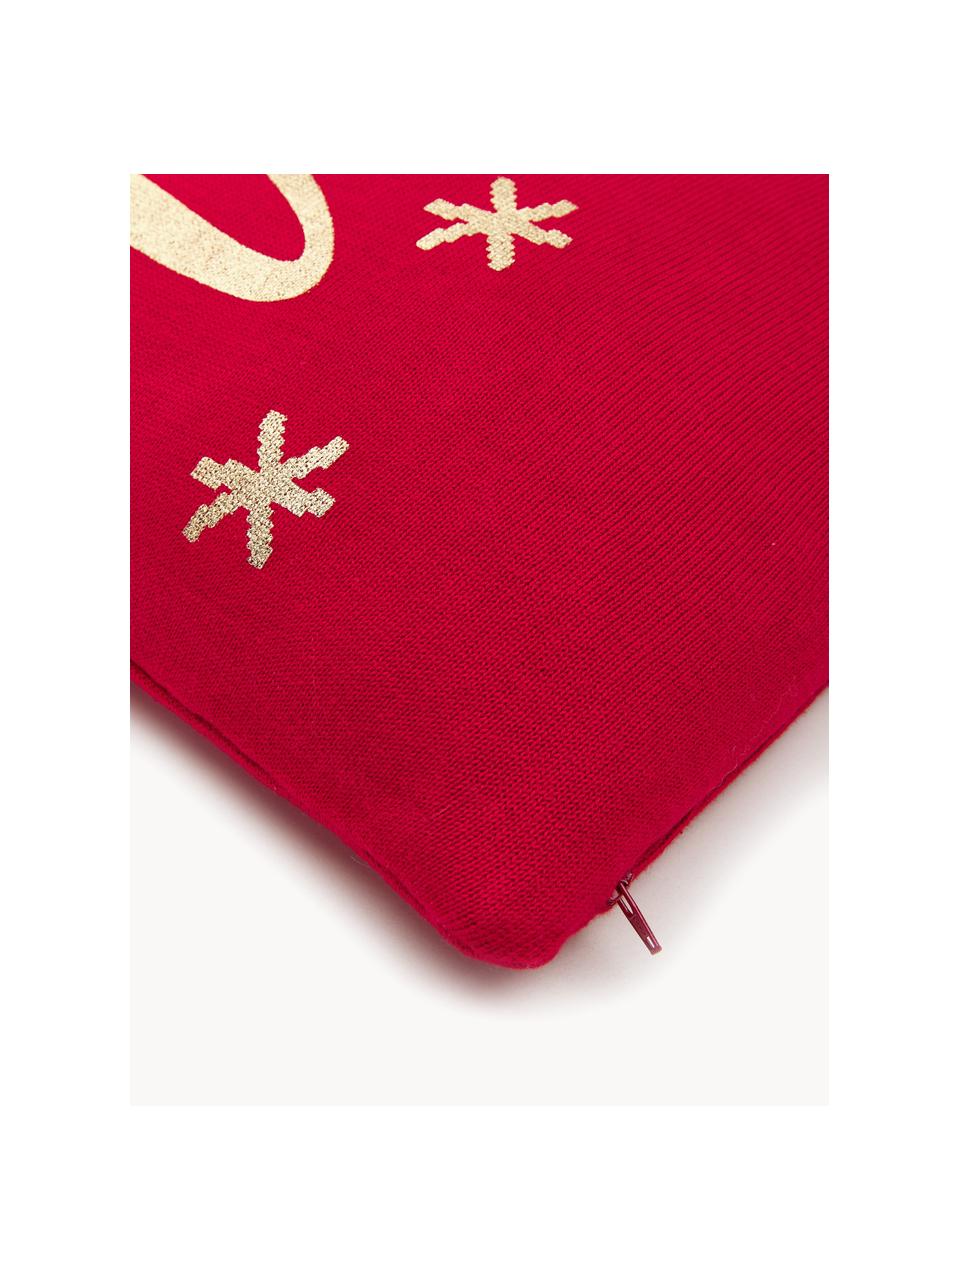 Gebreide kussenhoes Merry met opschrift, Katoen, Rood, goudkleurig, B 40 x L 40 cm